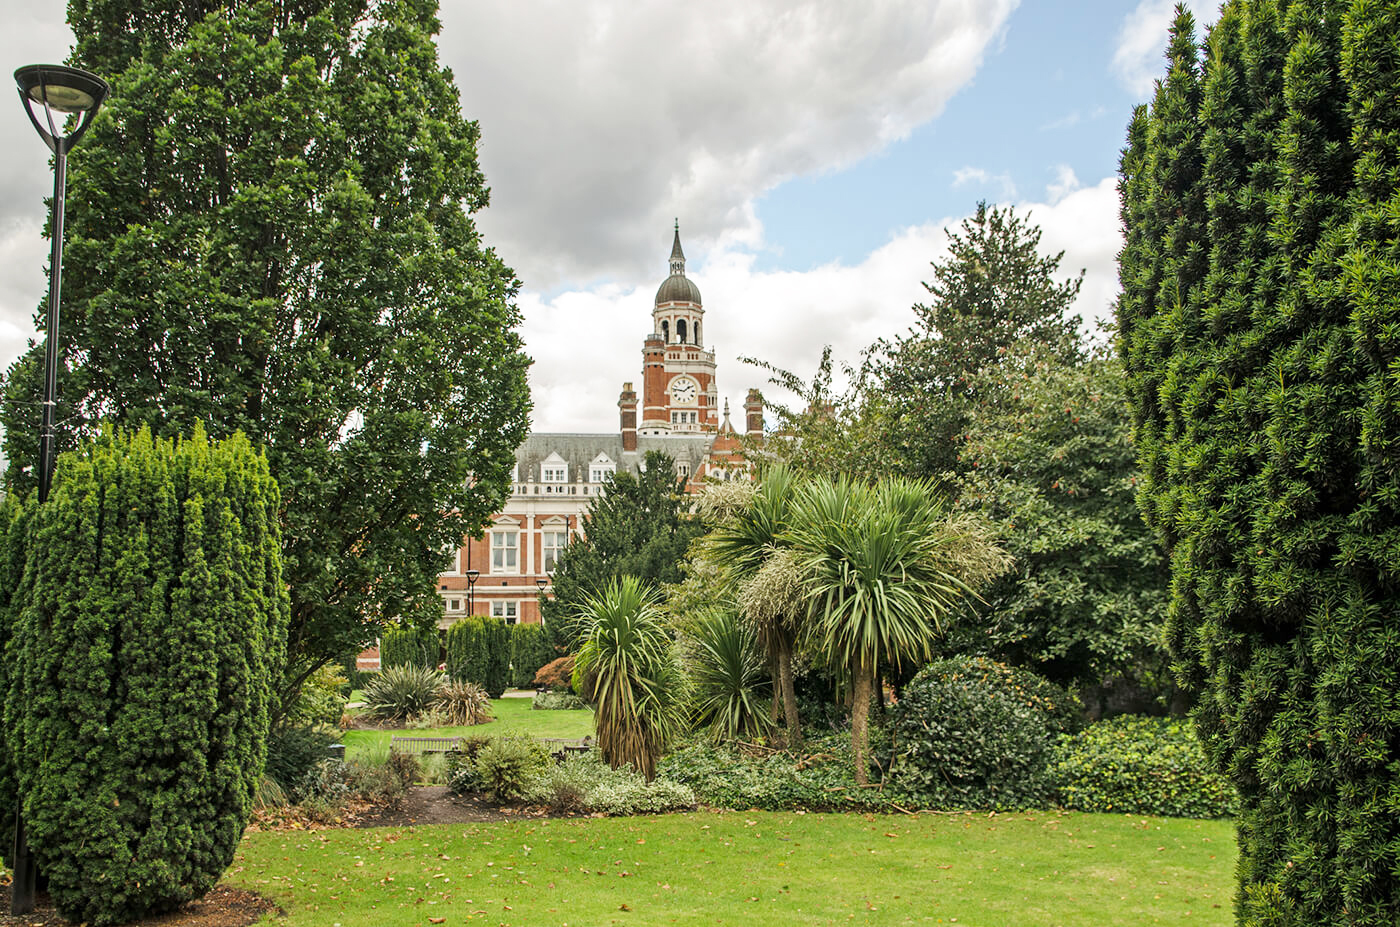 Croydon Town Hall, across Queen's Gardens